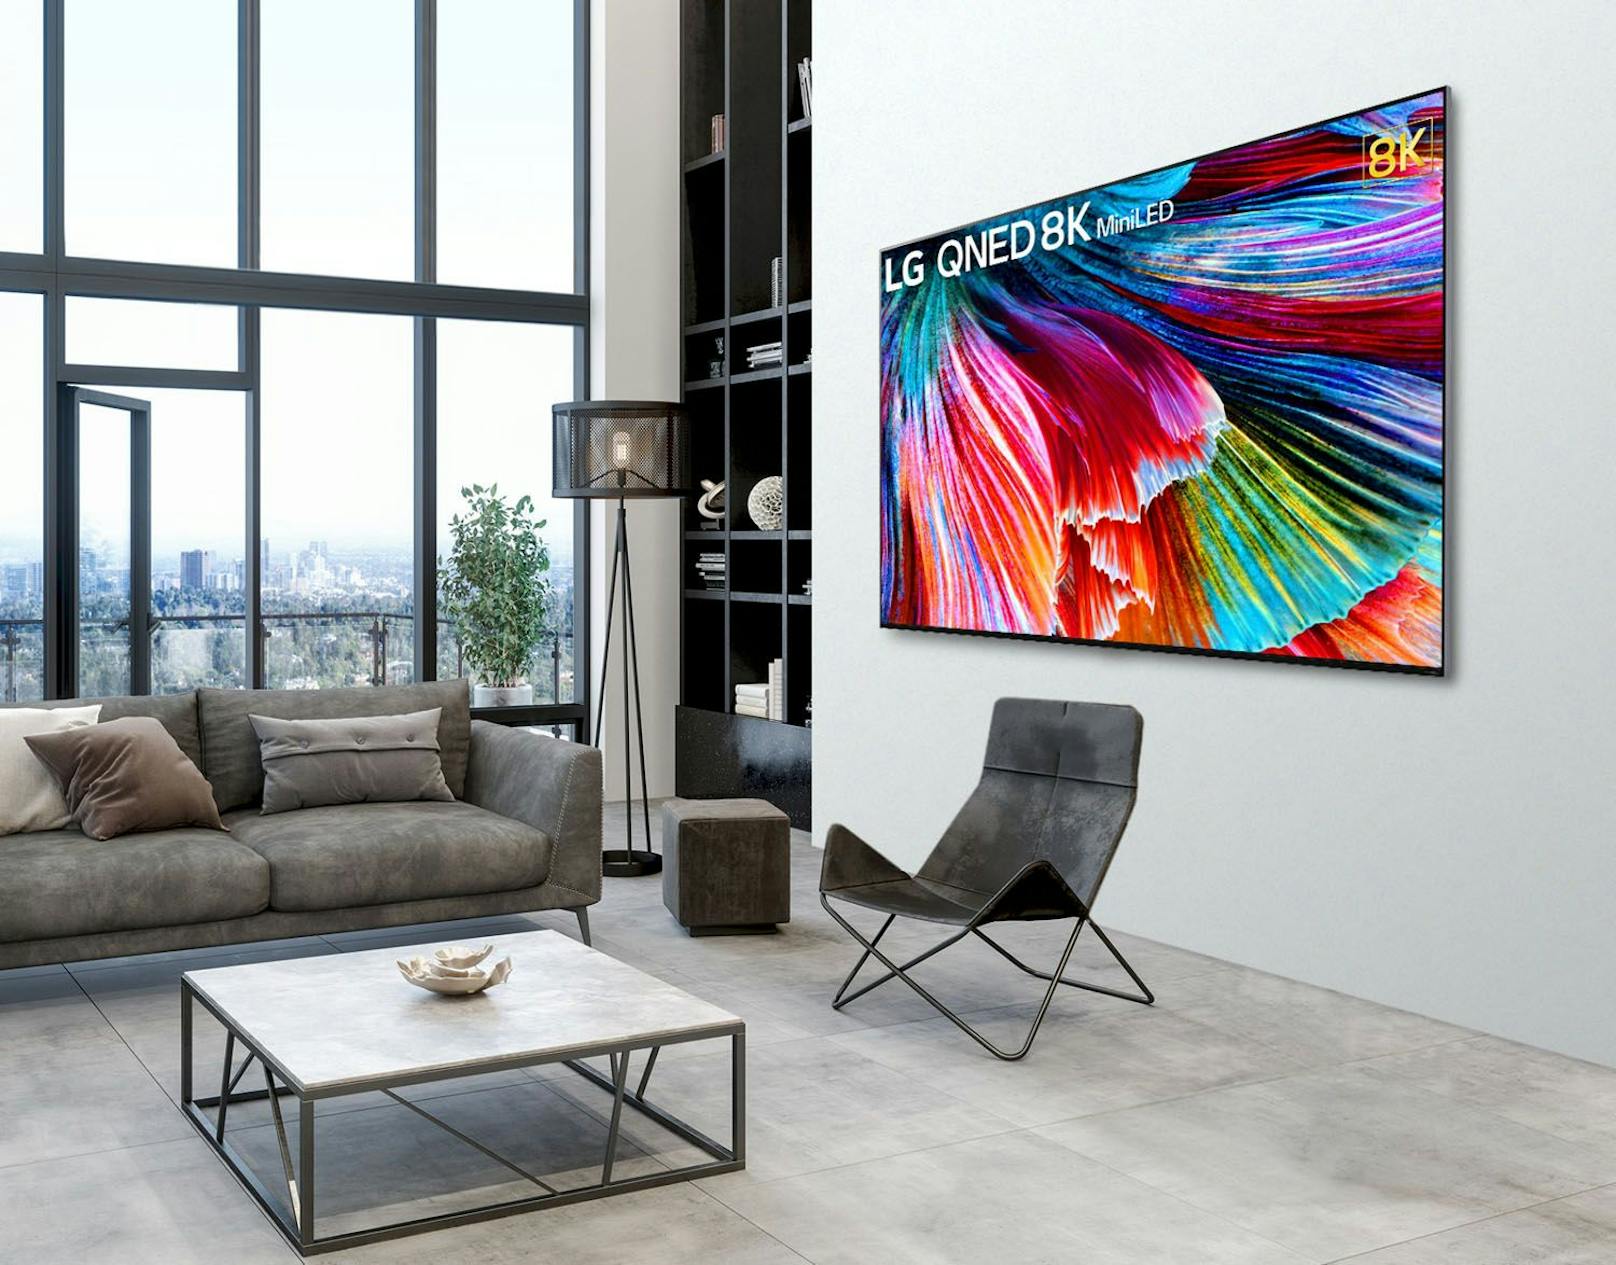 QNED MiniLED TVs von LG setzen neuen Standard für LCD-Bildqualität.